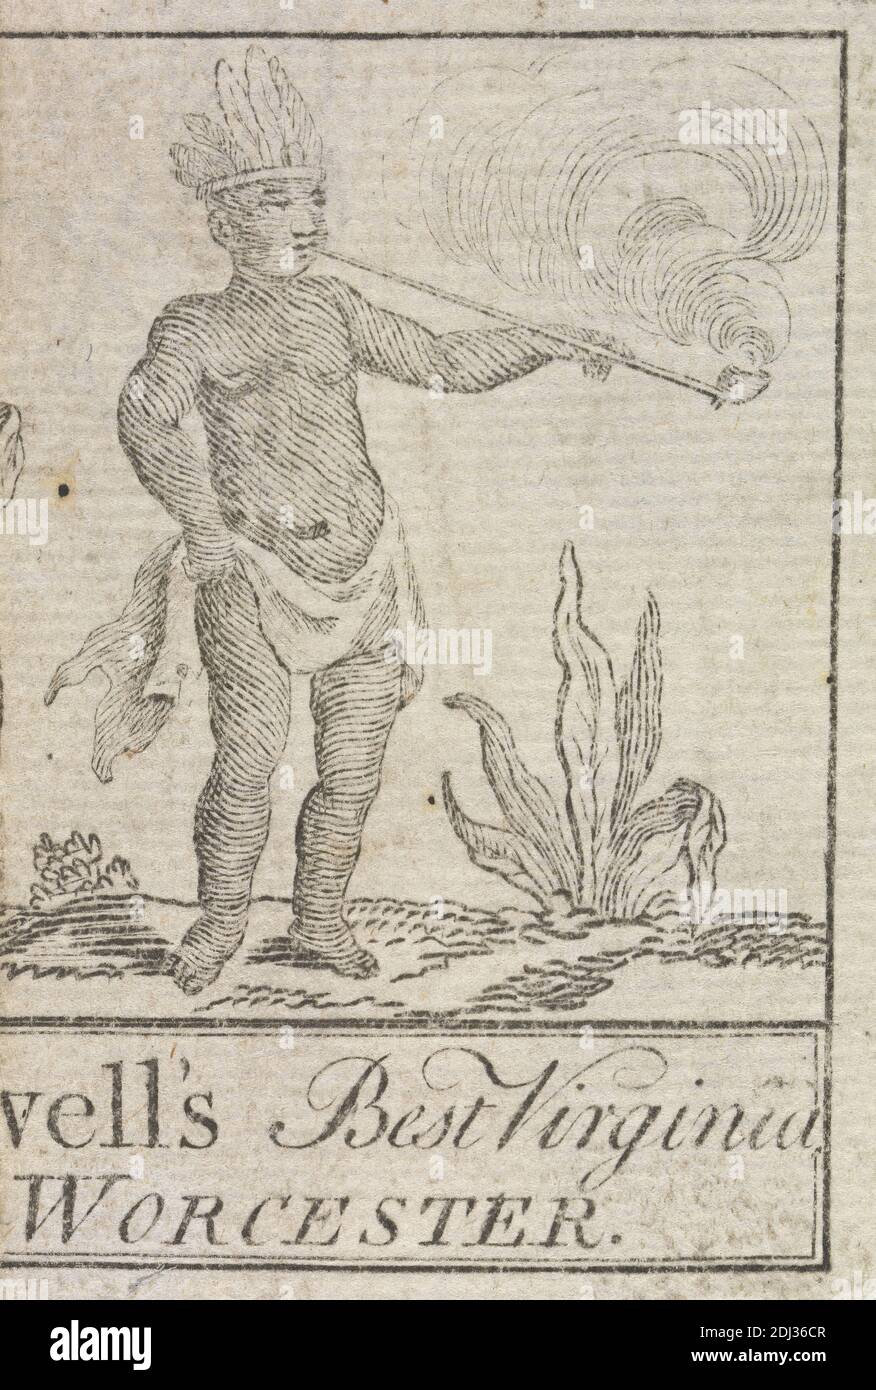 Tauschkarte für ...... vell's Best Virginia Tobacco, von Worcester, unbekannter Künstler, achtzehnten Jahrhundert, ca. 1770 Stockfoto